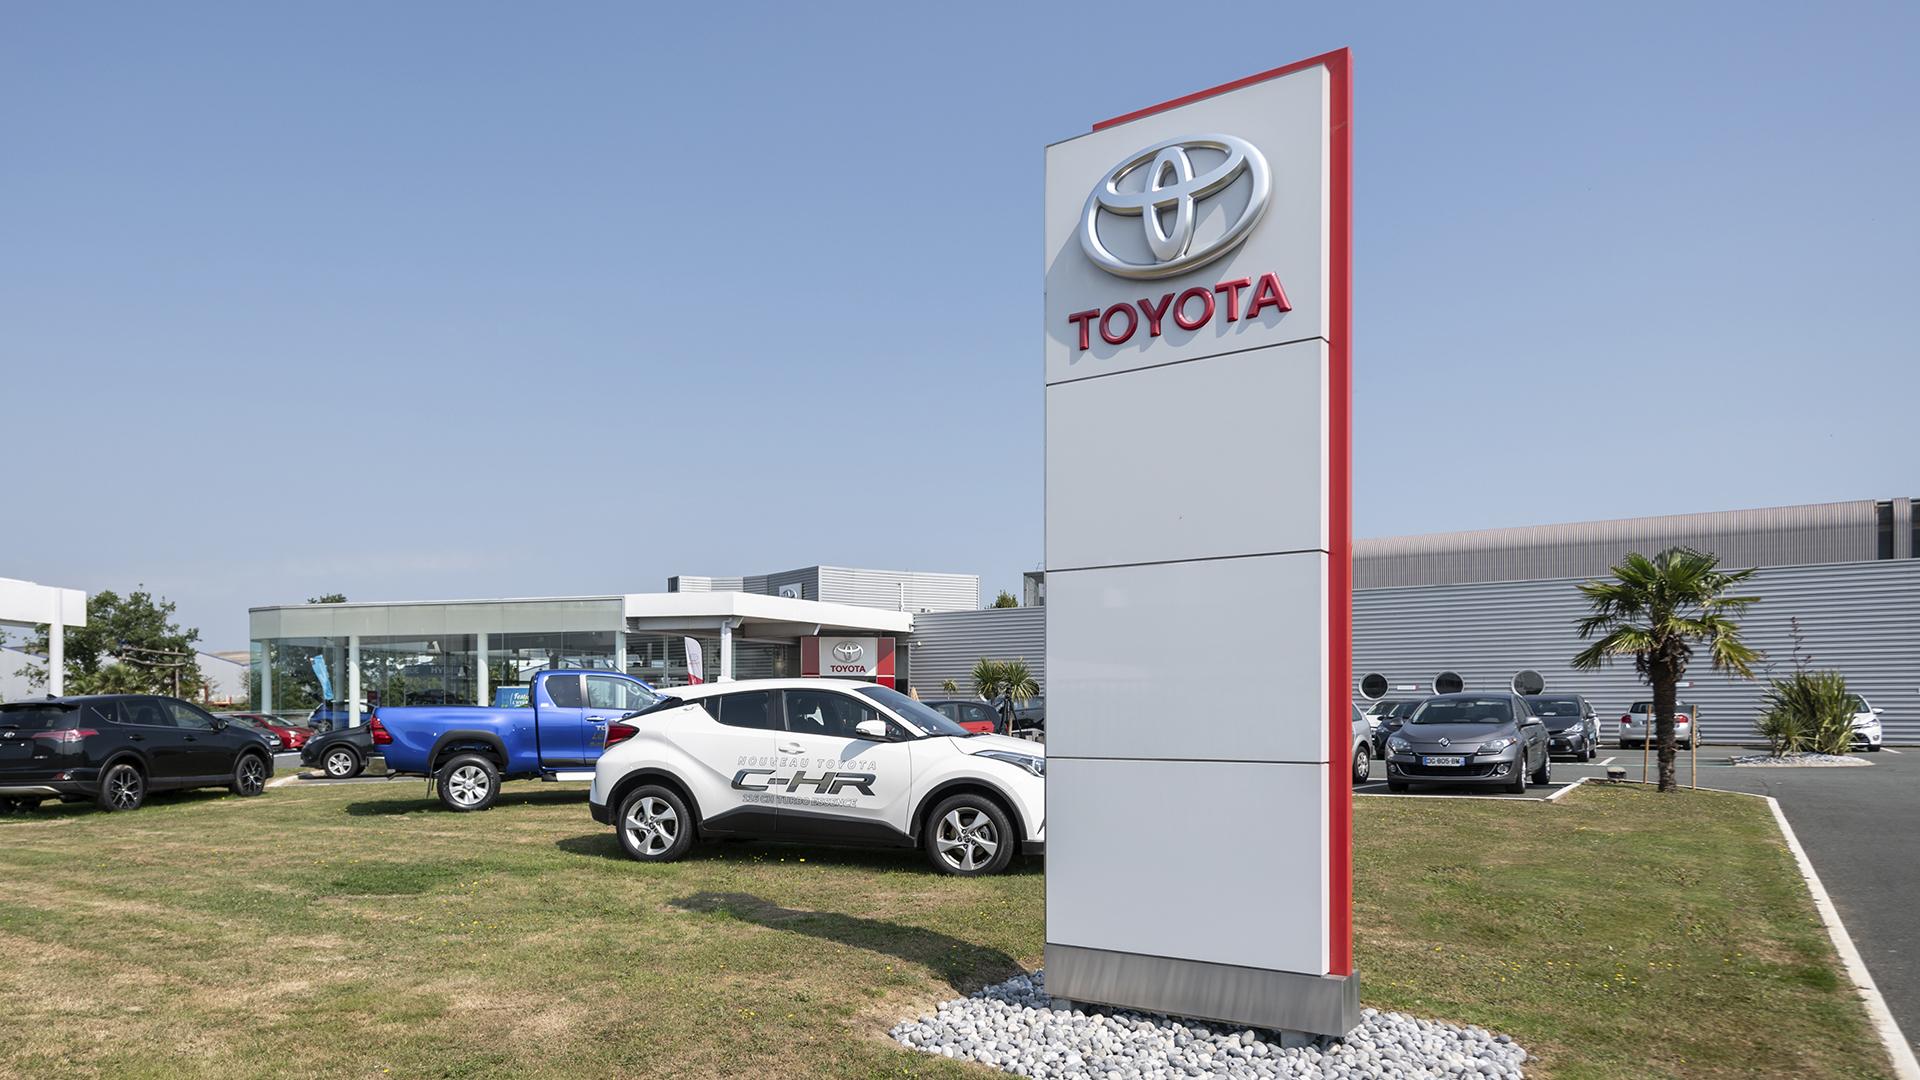 Toyota dealership signage totem manufactured by Visotec